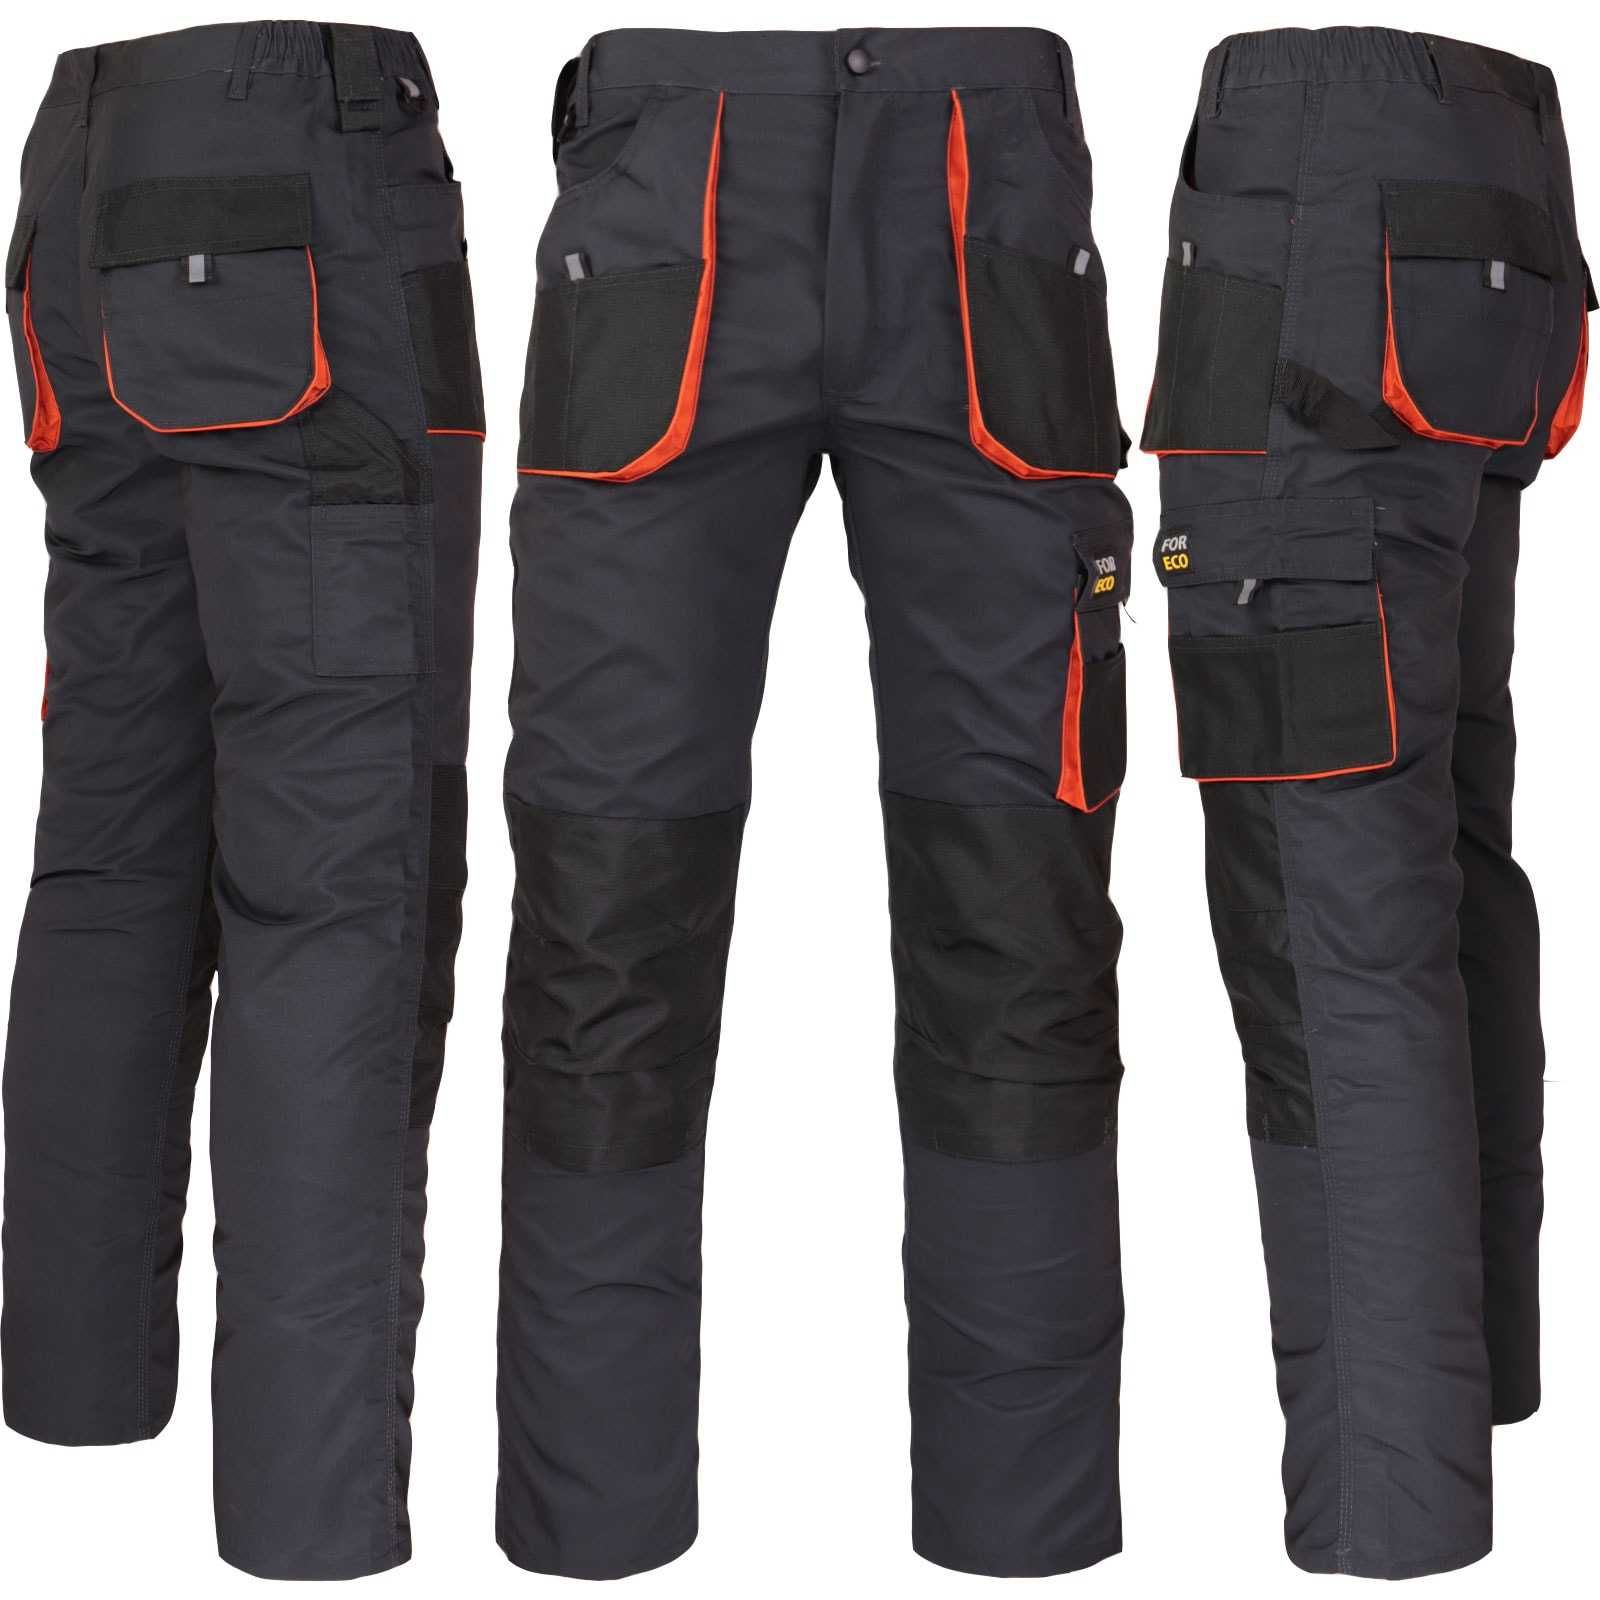 Рабочие мужские брюки Рабочие штаны с карманами Польша Спец одяг